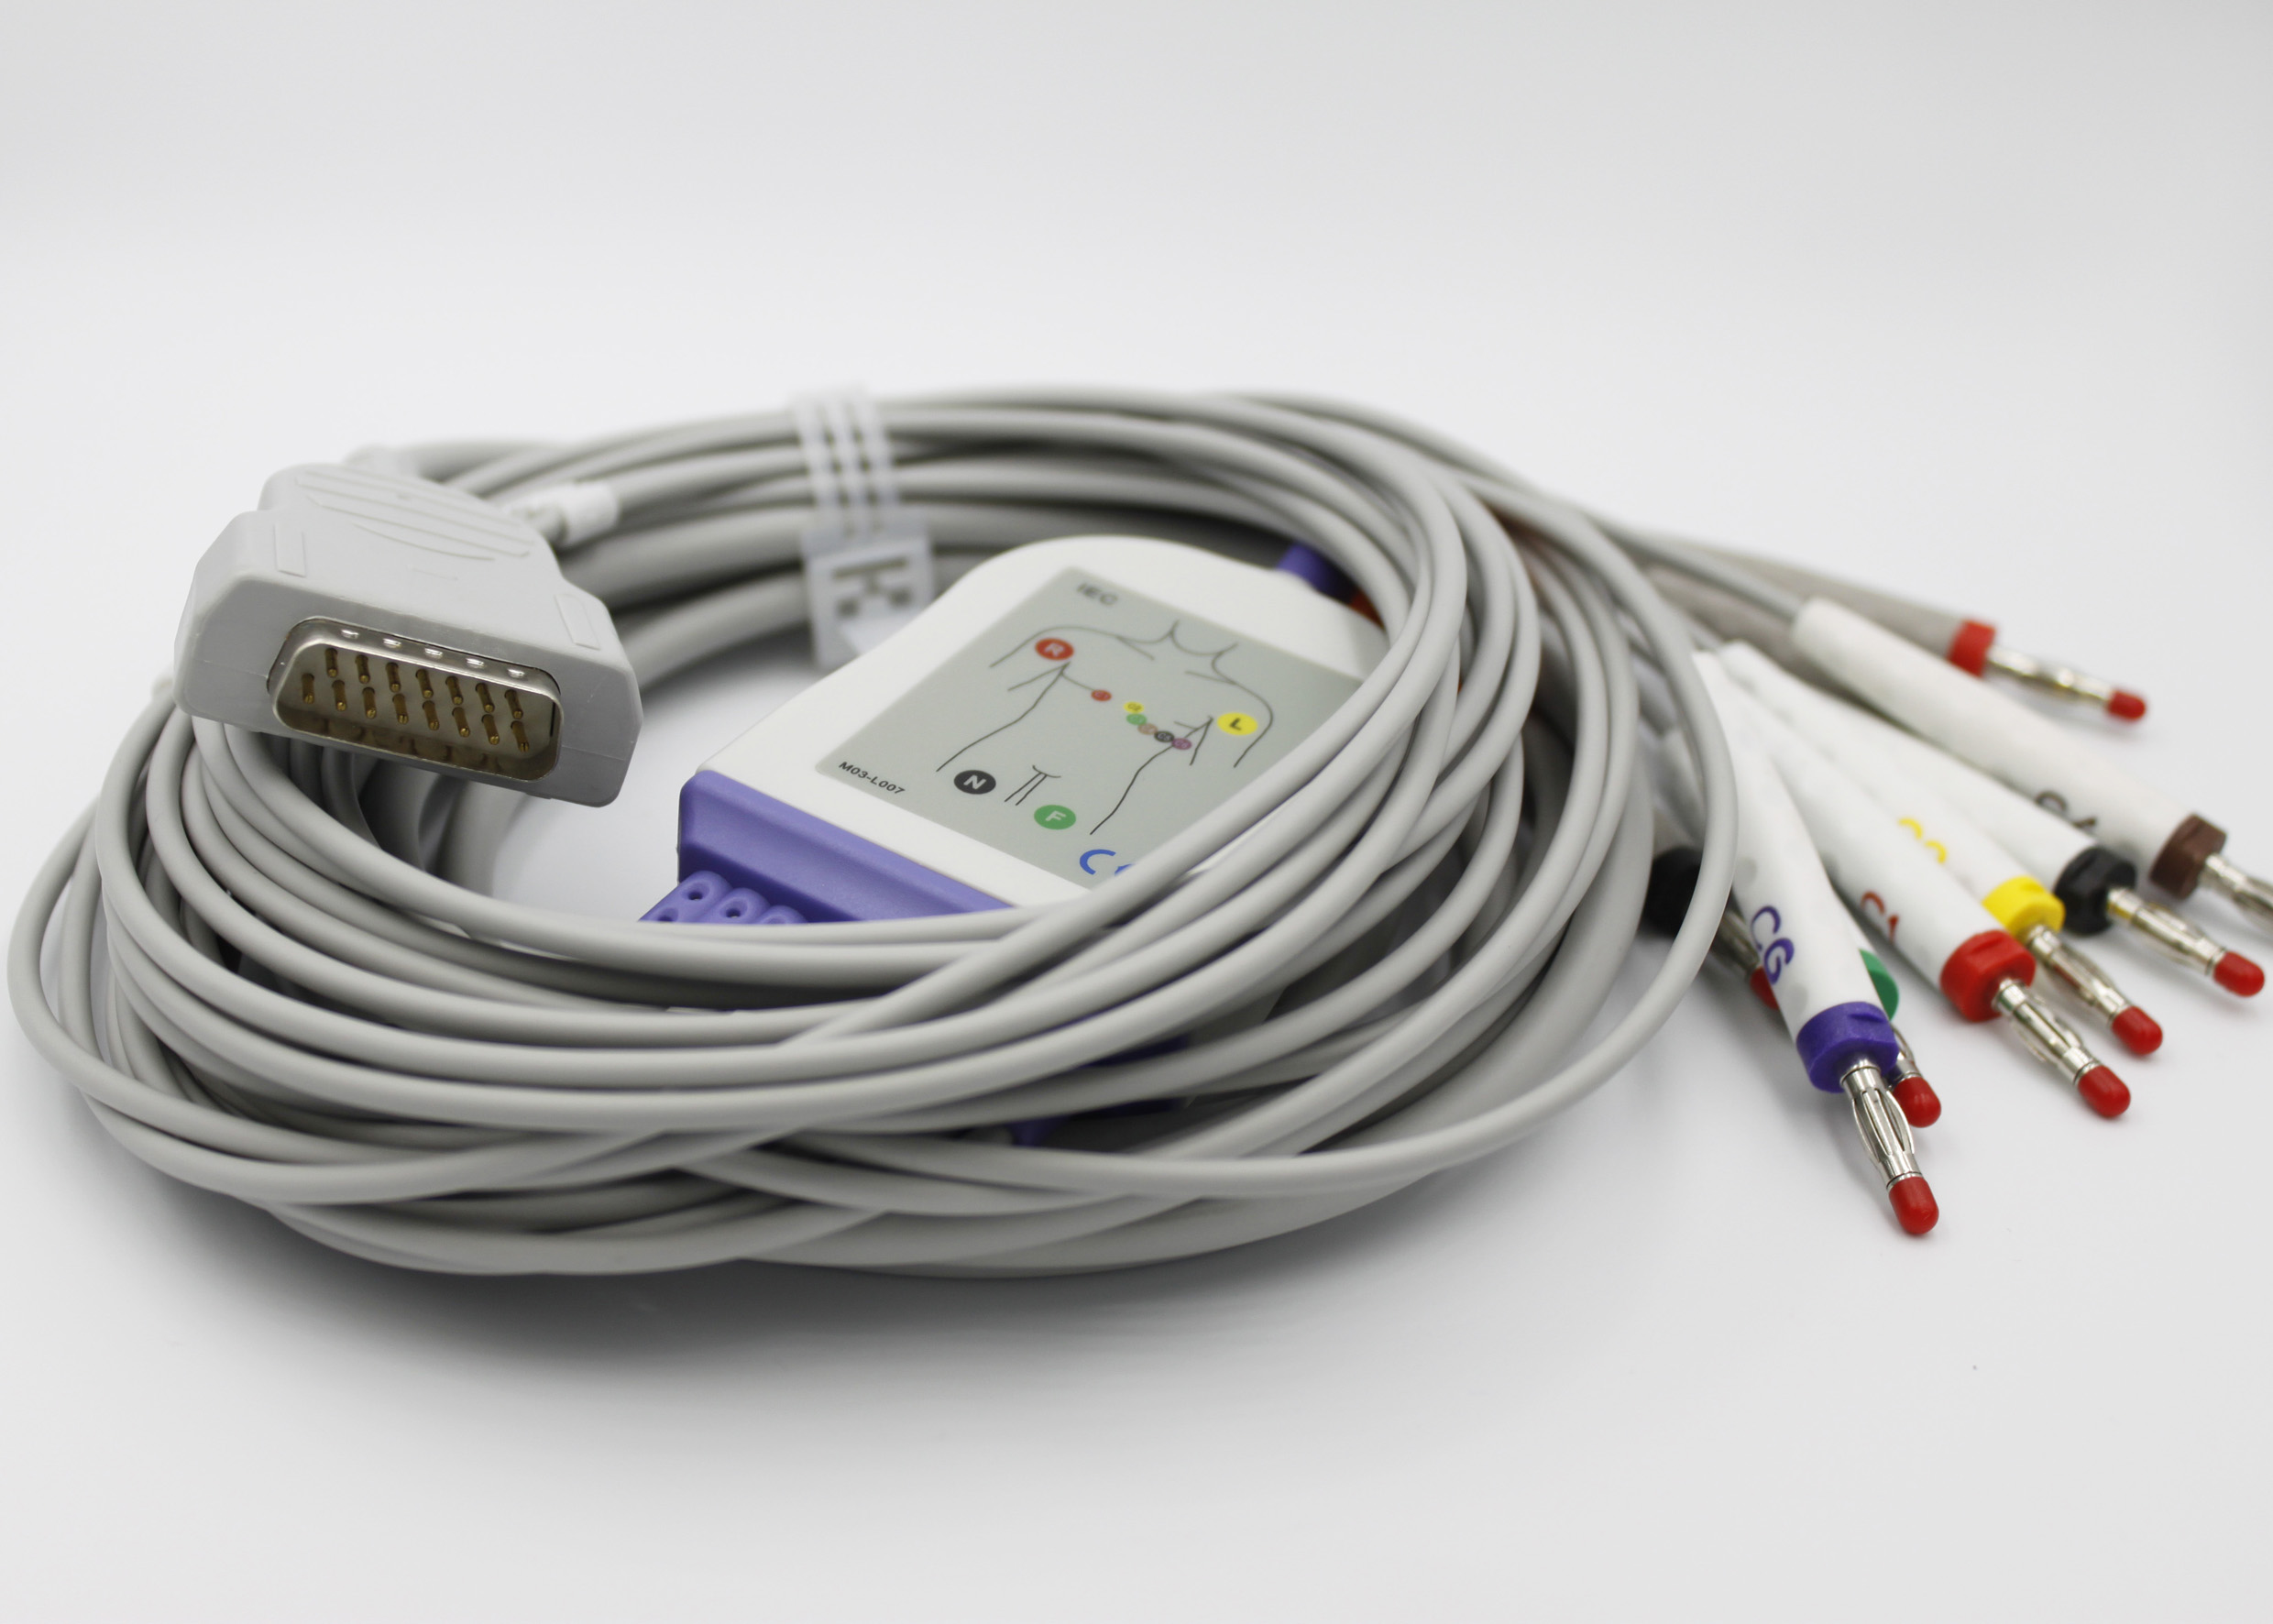 ЭКГ кабель пациента с интегрированными отведениями для GE Marquette  MAC 400, MAC 500, MAC 600, MAC 800, MAC 1000, MAC 1100, MAC 1200, MAC 1200ST, MAC 1600, MAC 2000, MAC 3500, Microsmart M, Hellige Micro Smart, 10 отведений (2029890-001)